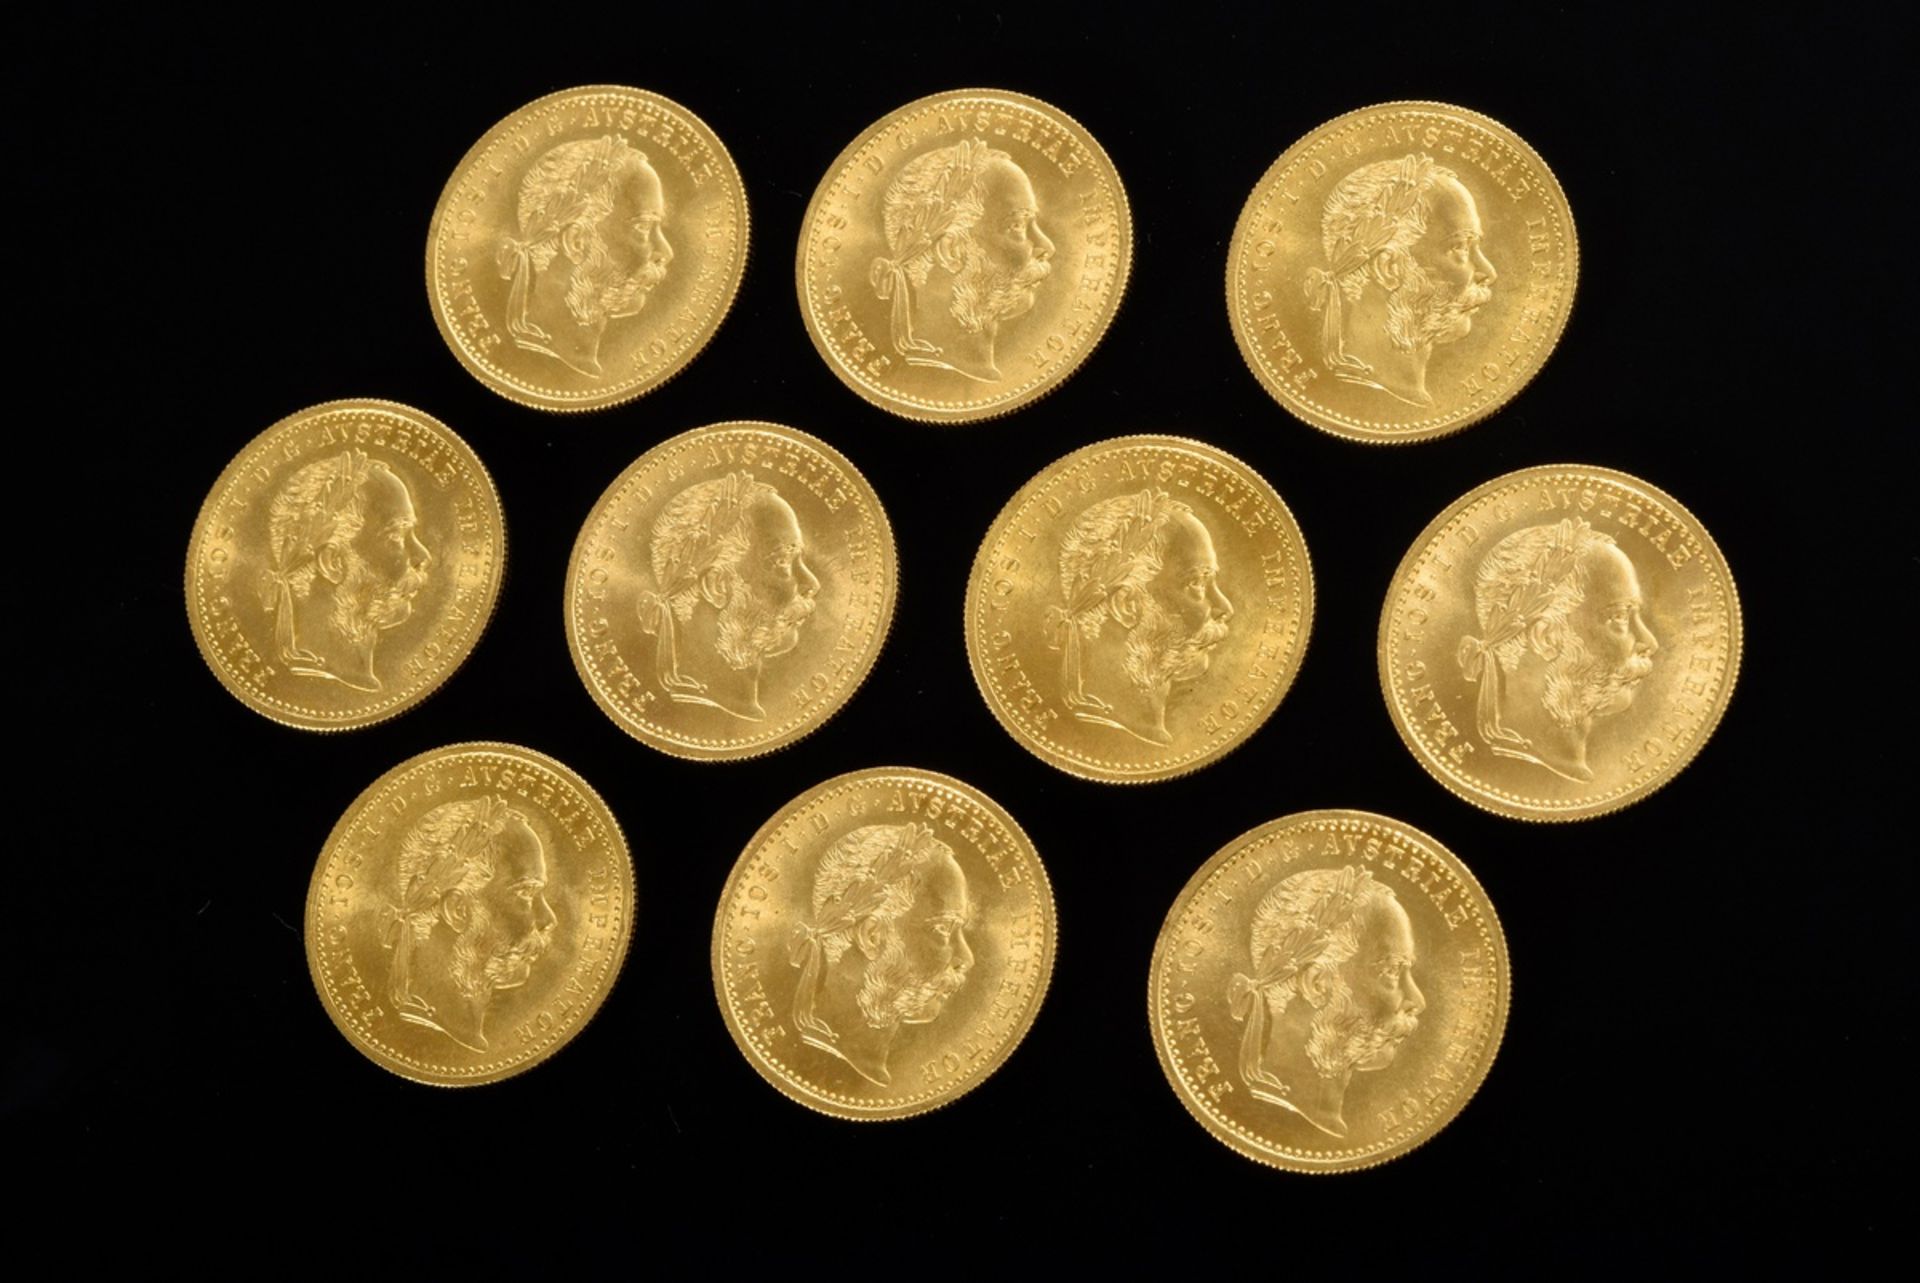 10 GG 986 coins "1 Ducat, Austria 1915, Emperor Franz Joseph I", 34.9g, Ø 2cm